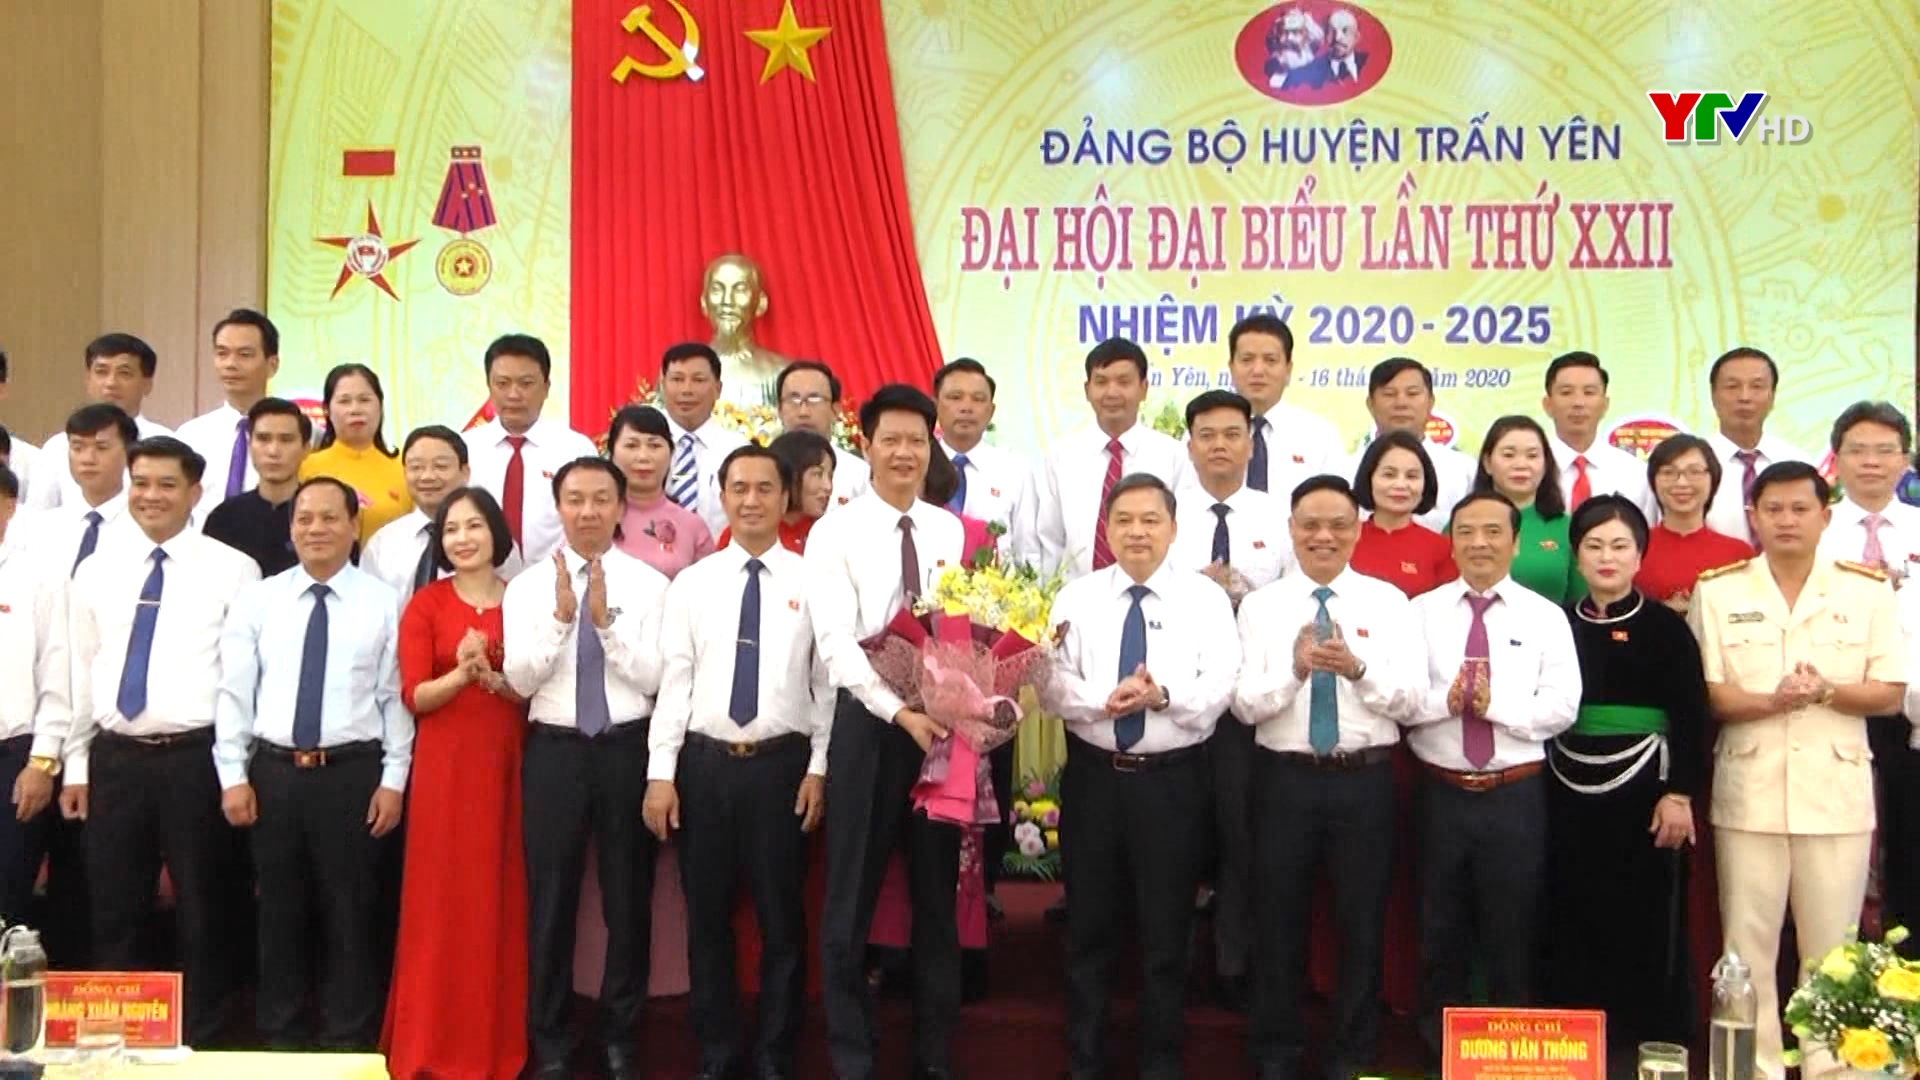 Đại hội đại biểu Đảng bộ huyện Trấn Yên nhiệm kỳ 2020 - 2025 thành công tốt đẹp